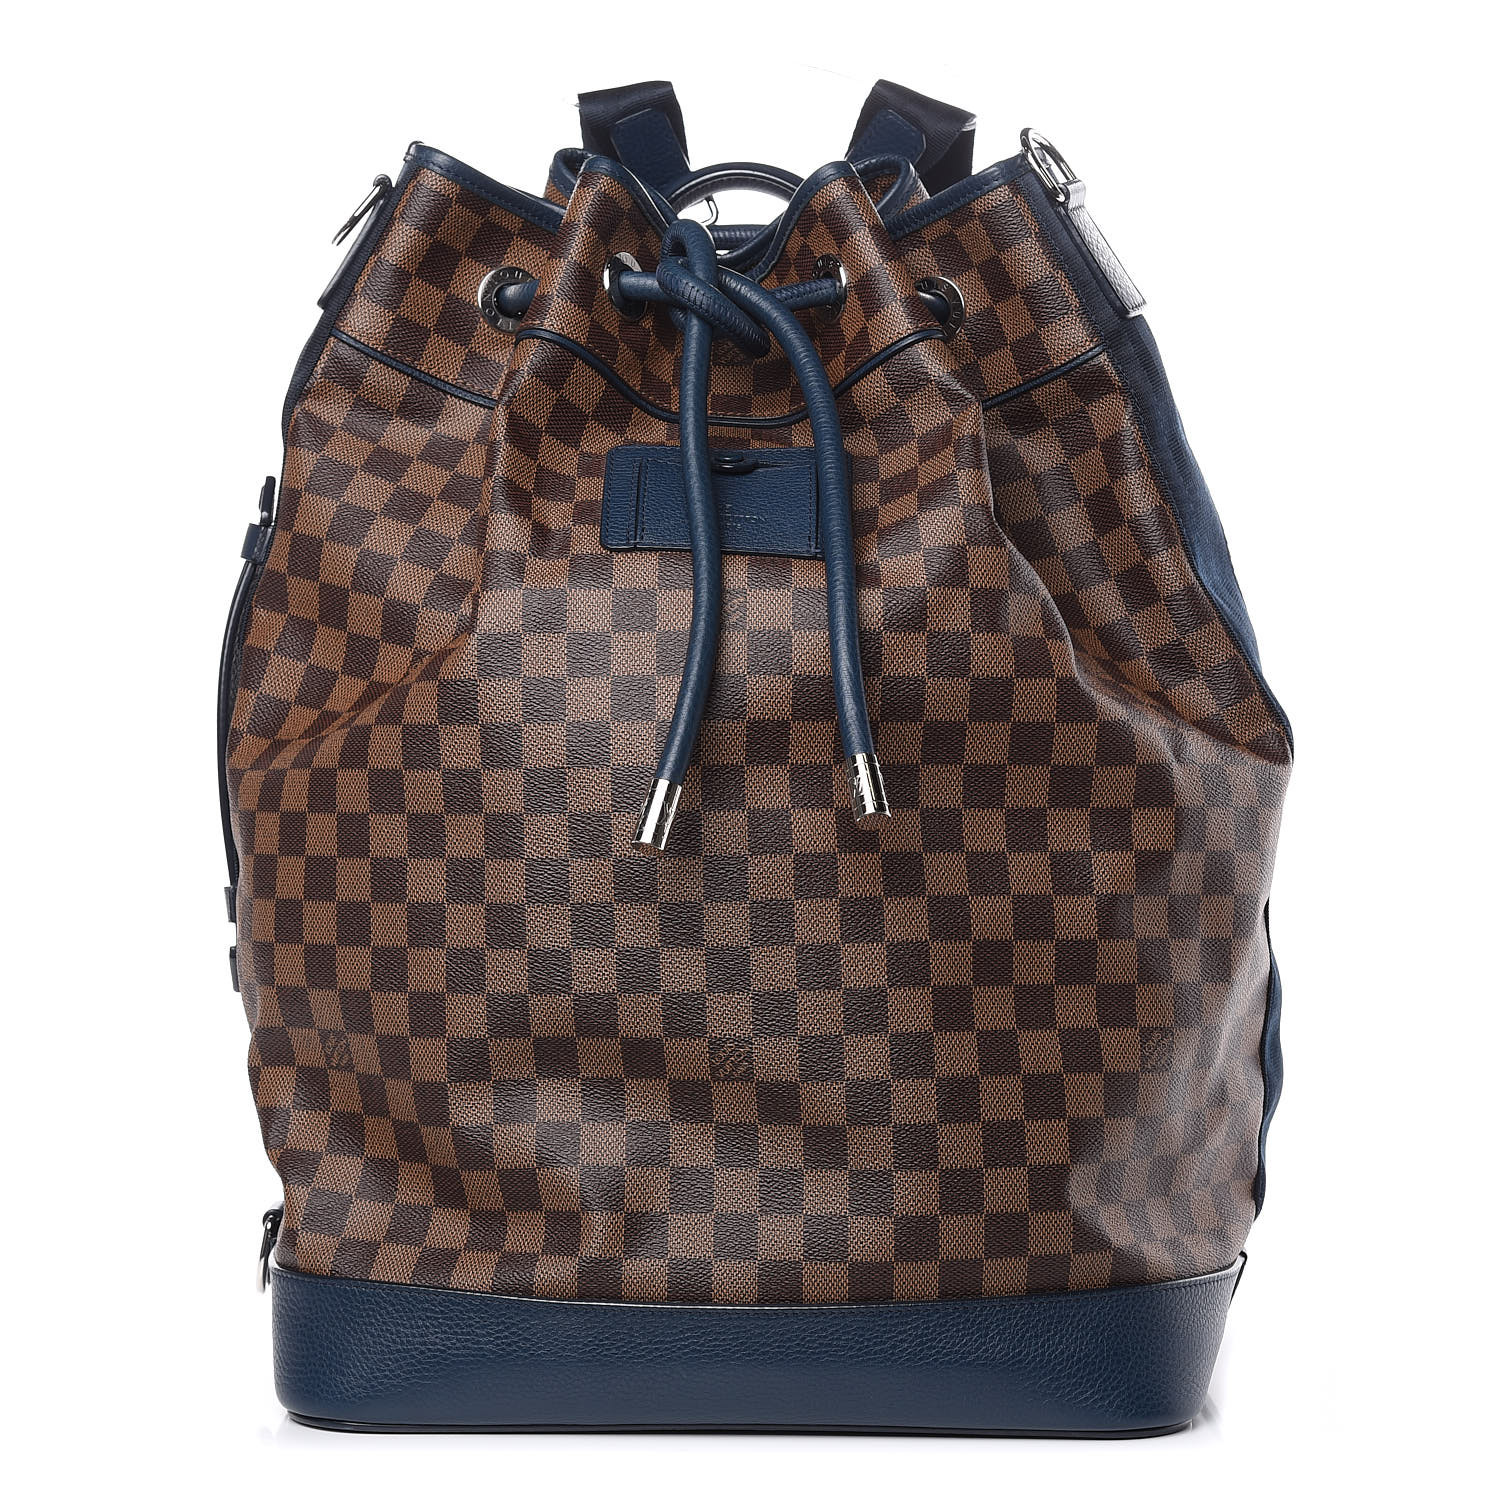 Extra Large Louis Vuitton Marin Bag Louis Vuitton Bag, Louis Vuitton Duffle  Bag